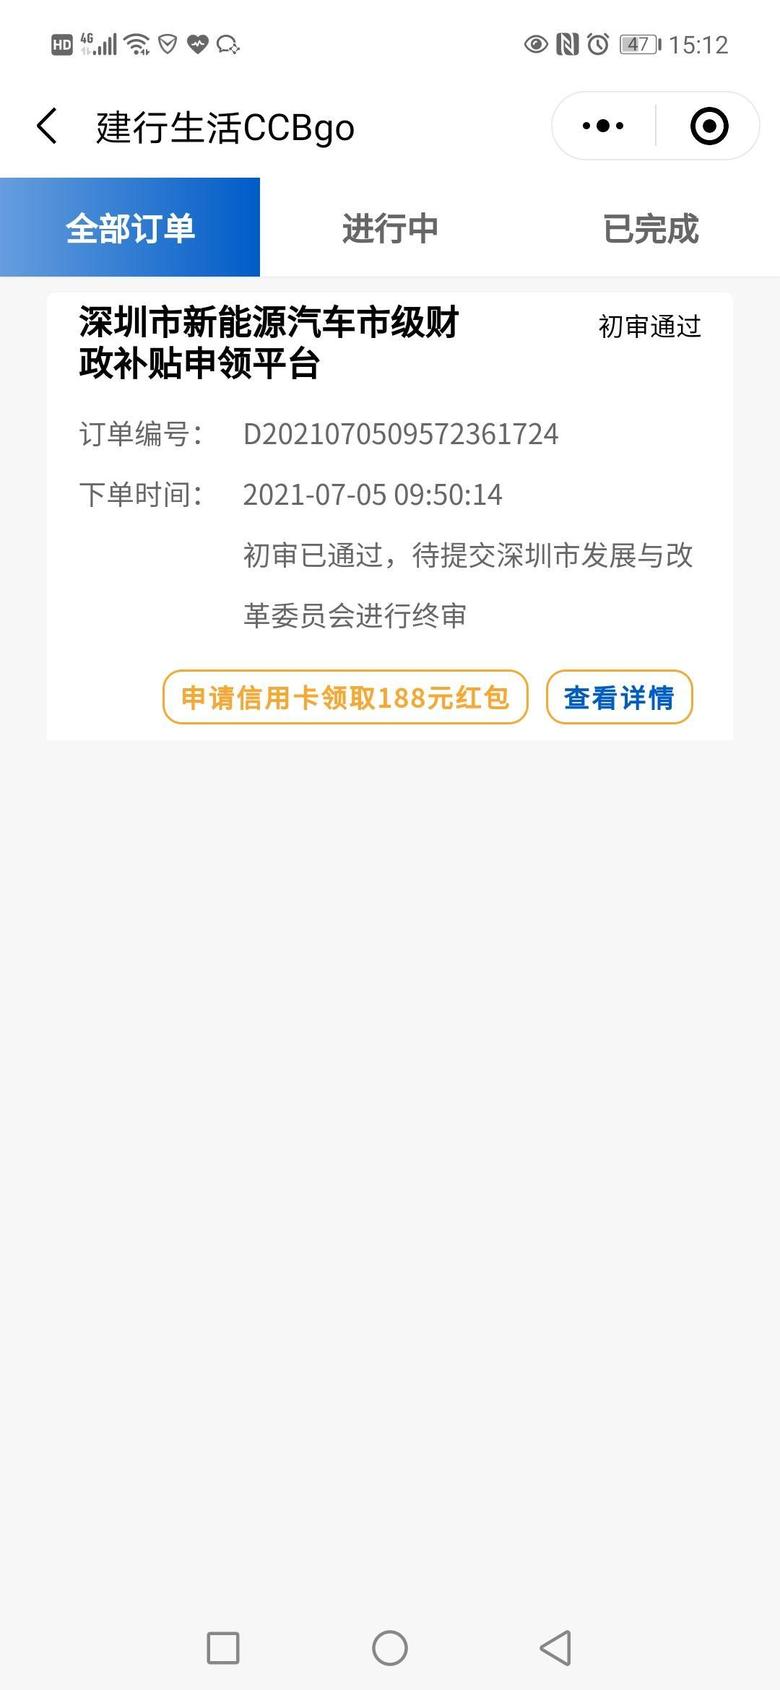 汉ev 有没深圳地区的车友6月30日前开具发票，补贴申请流程都走完了吗？我的补贴流程还显示待发改委最终审核！